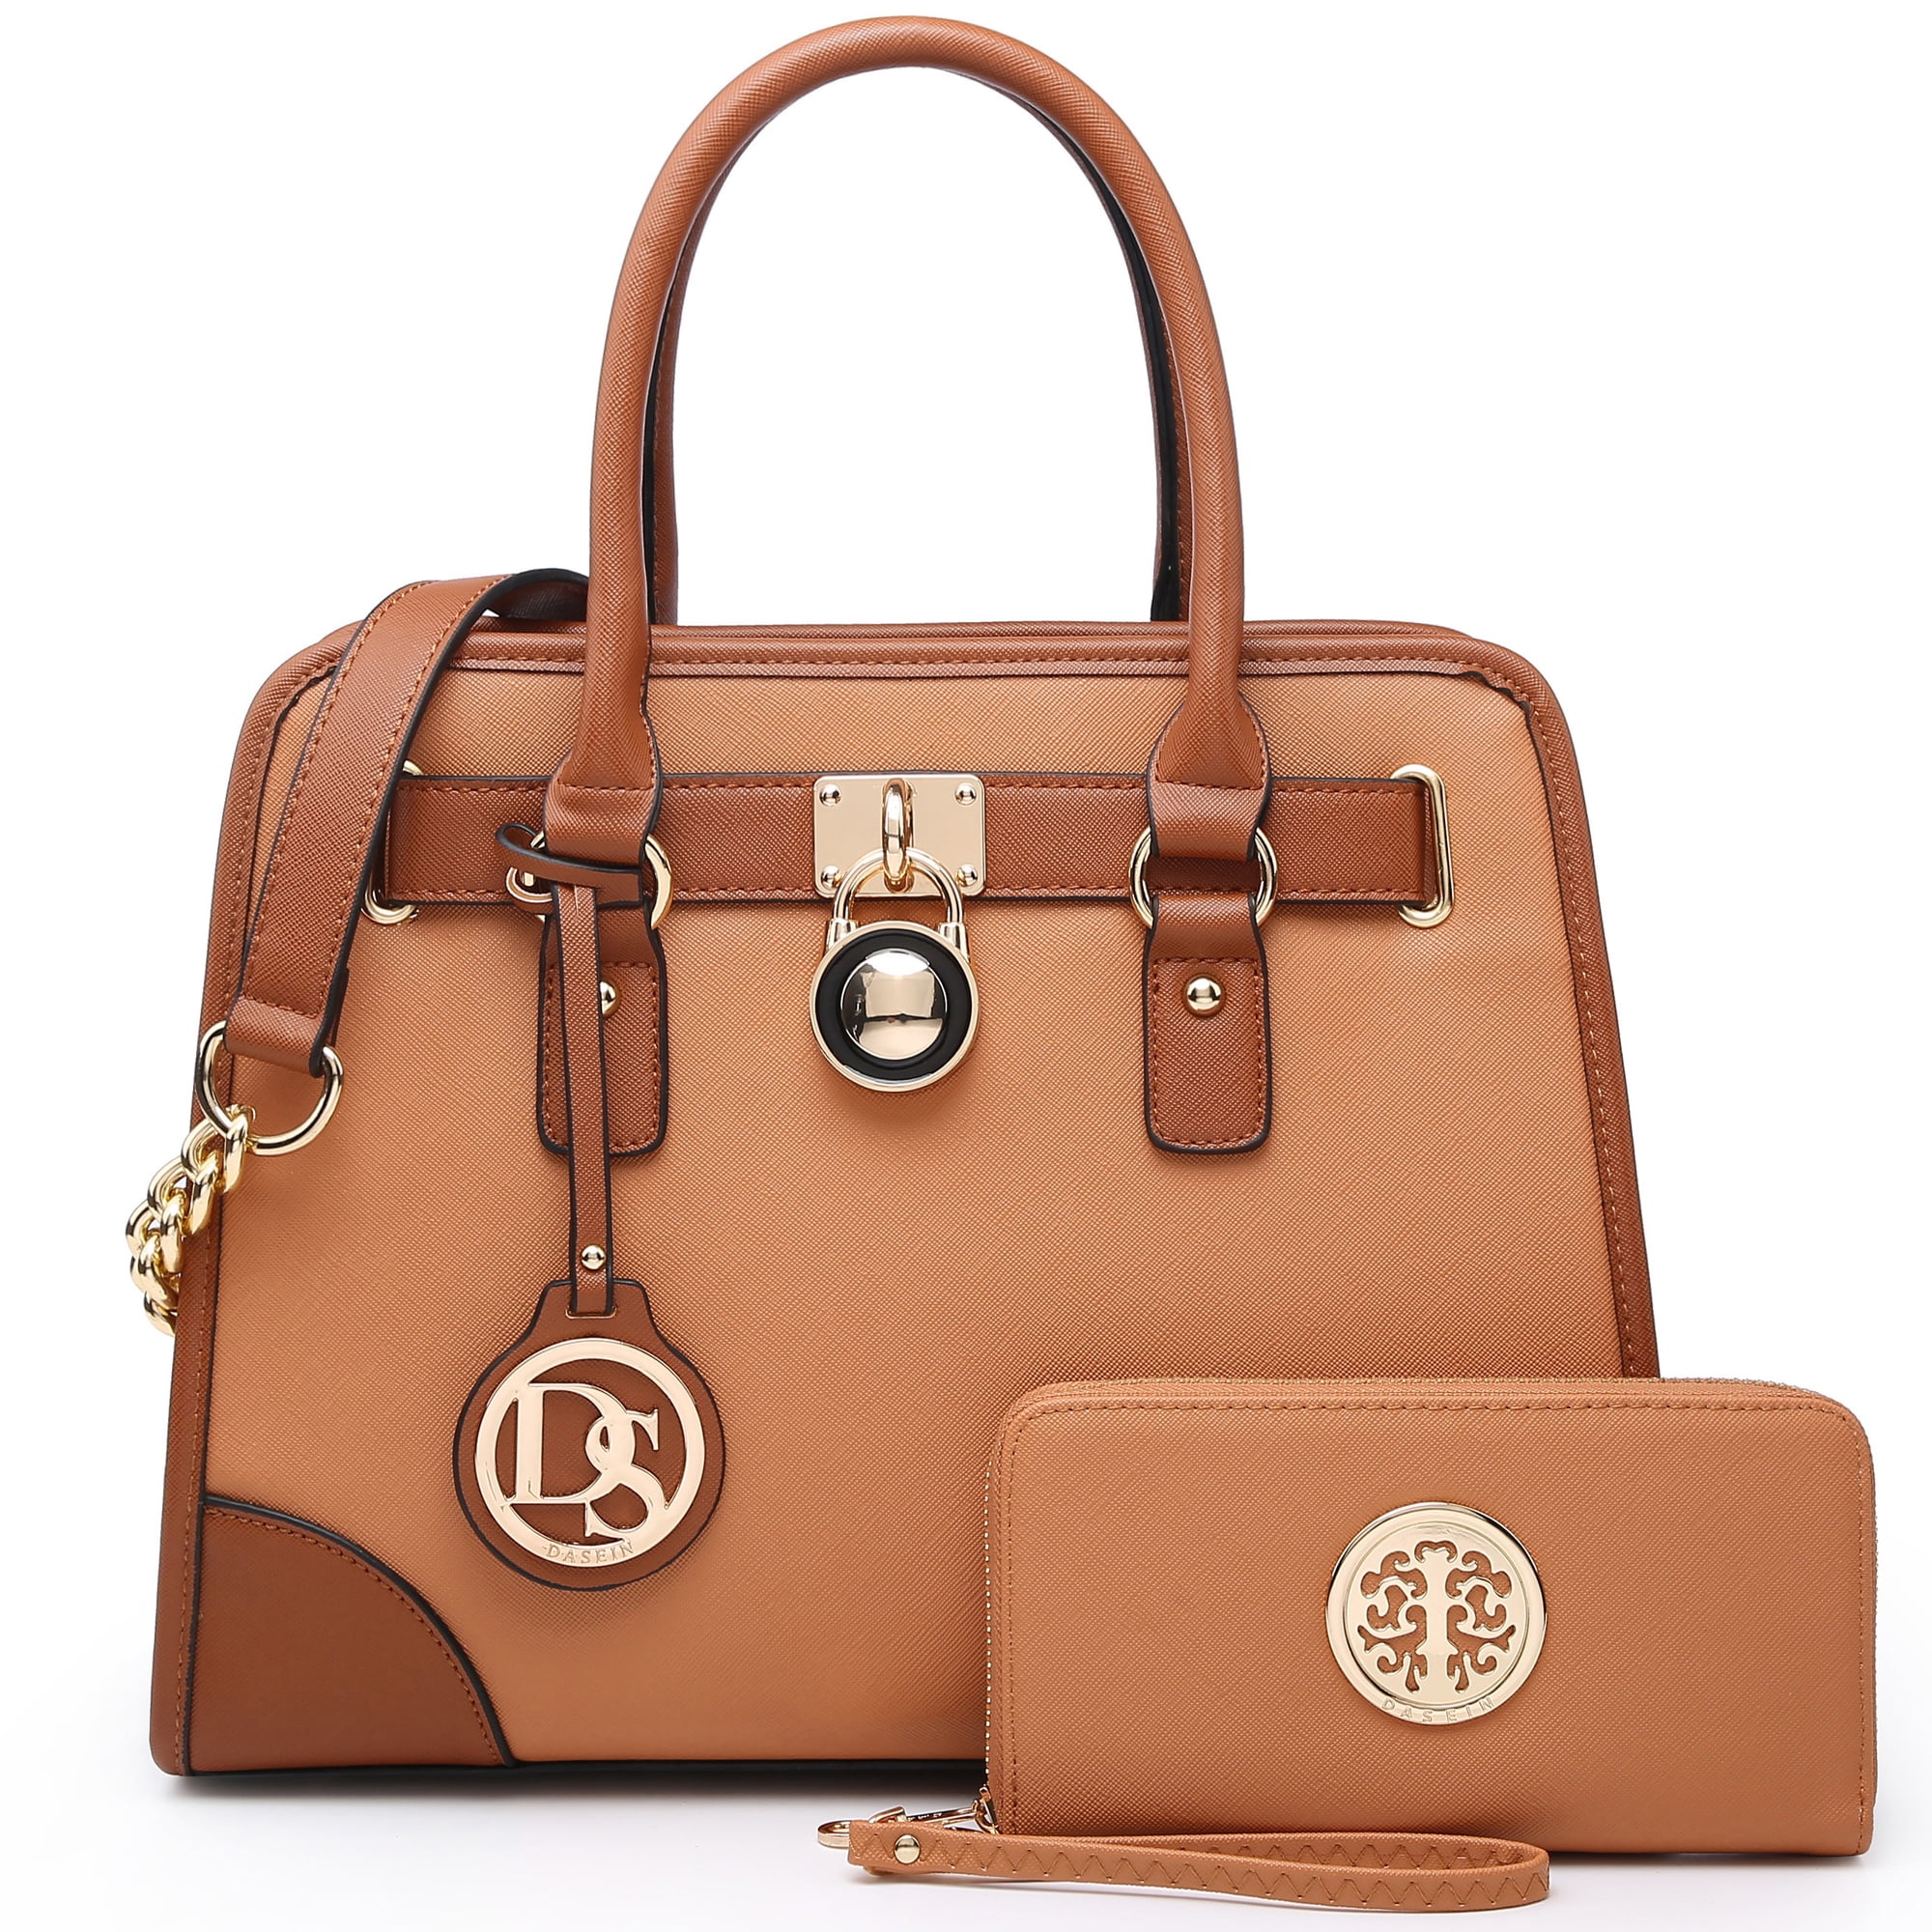 Dasein Womens Croco Leather Handbags TwoTone Satchel Buckle Purse Shoulder Bag 